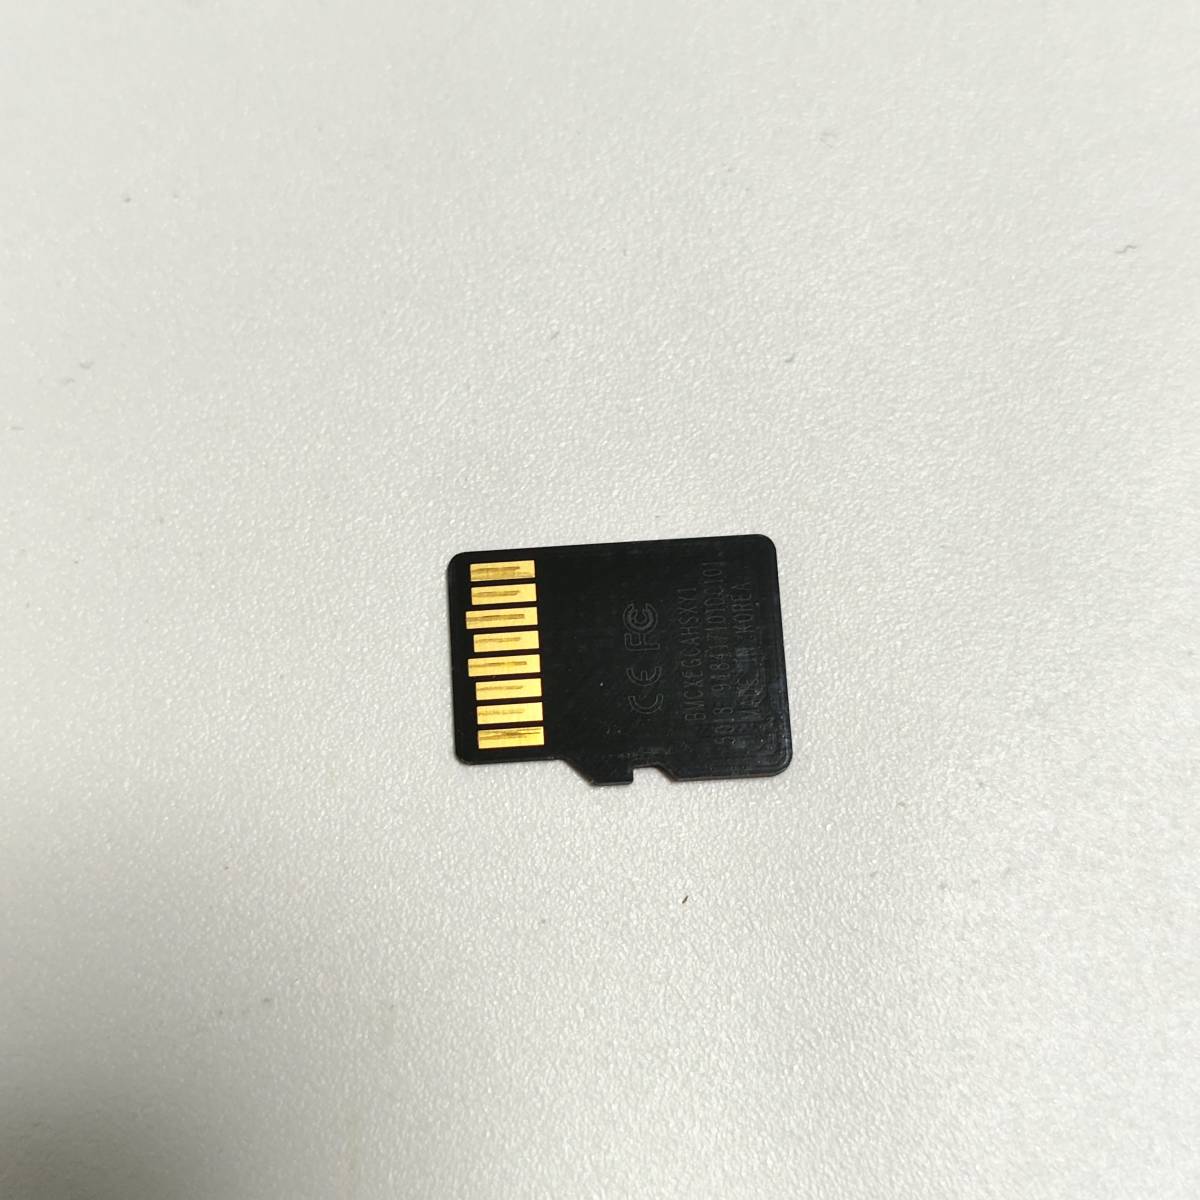 送料無料 動作確認済み Super Talent 256GB マイクロSDカード microSDXC UHS-I C10 U1 Switch対応 中古_画像2